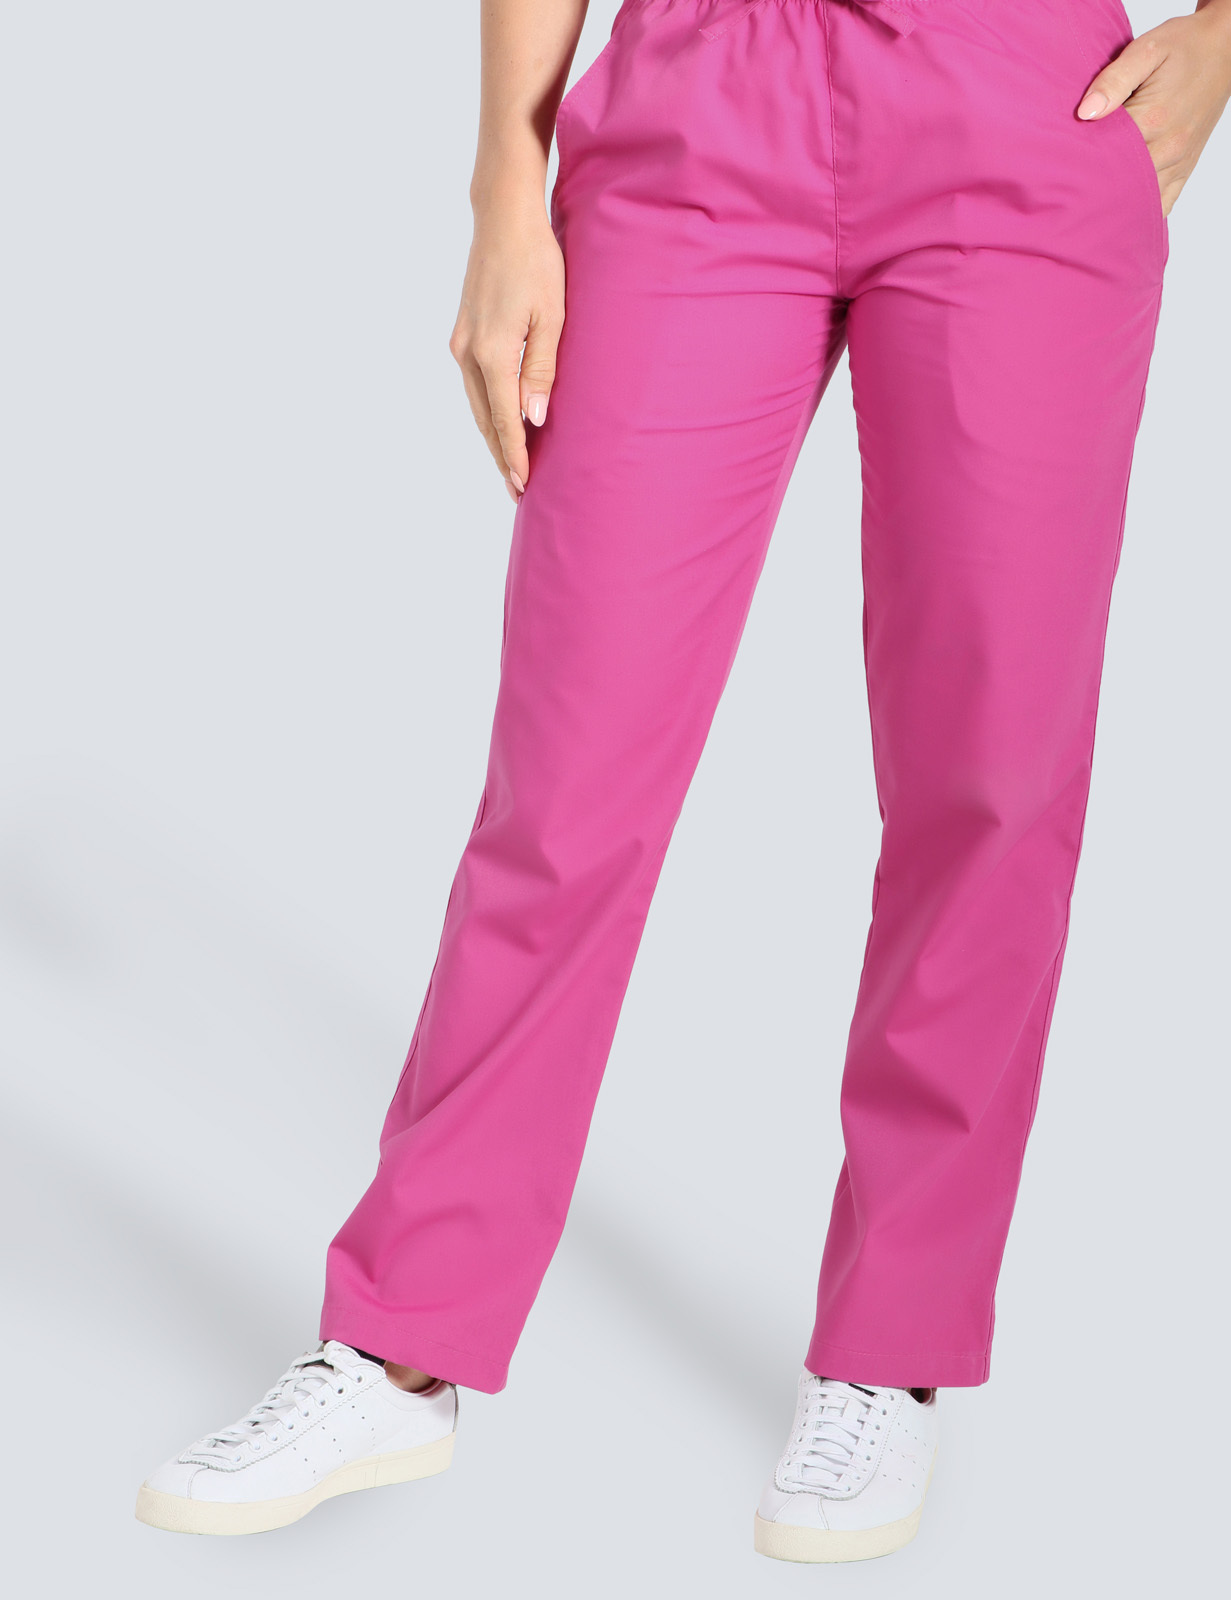 Women's Regular Cut Pants - Pink - Medium - Tall